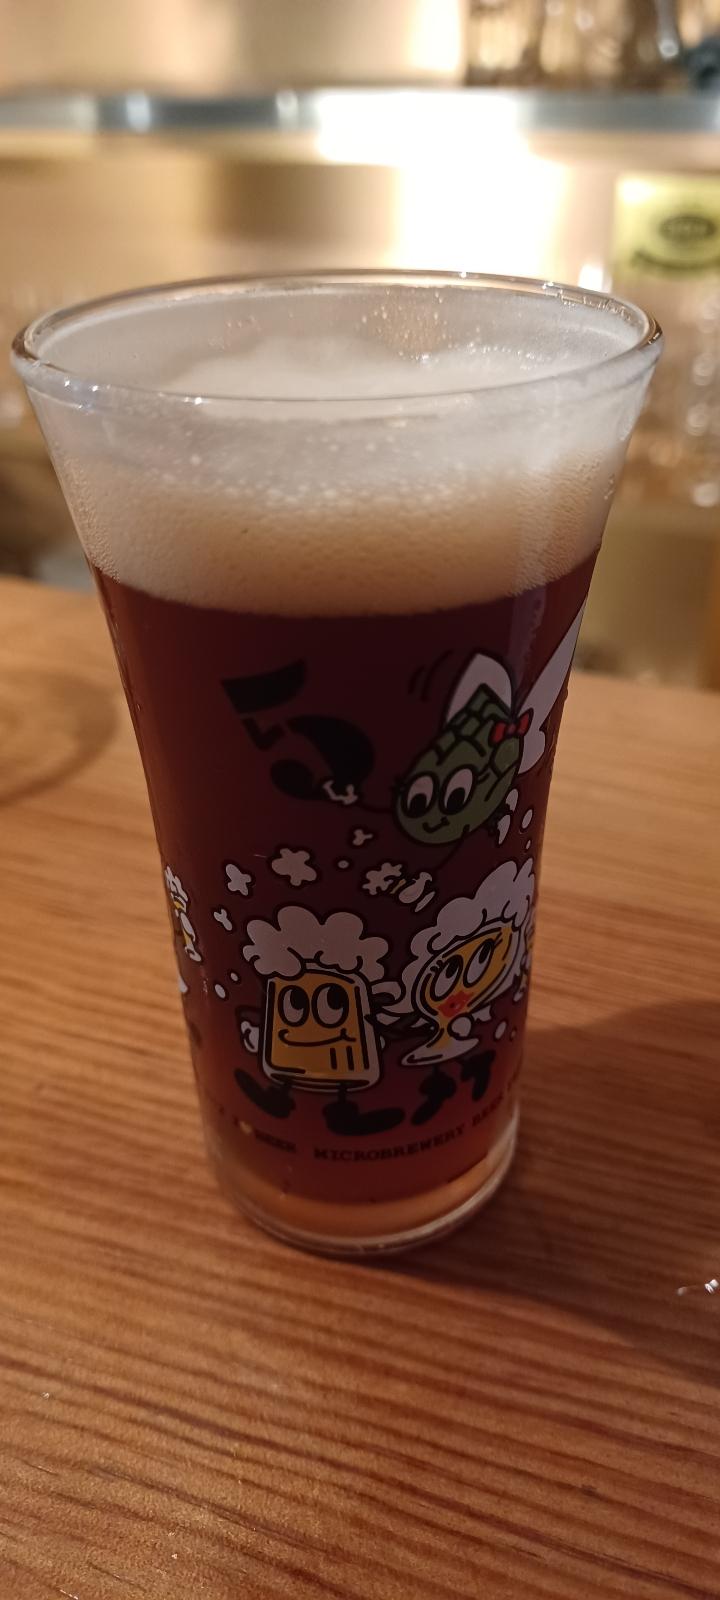 Iwatekura Michinoku Red Ale